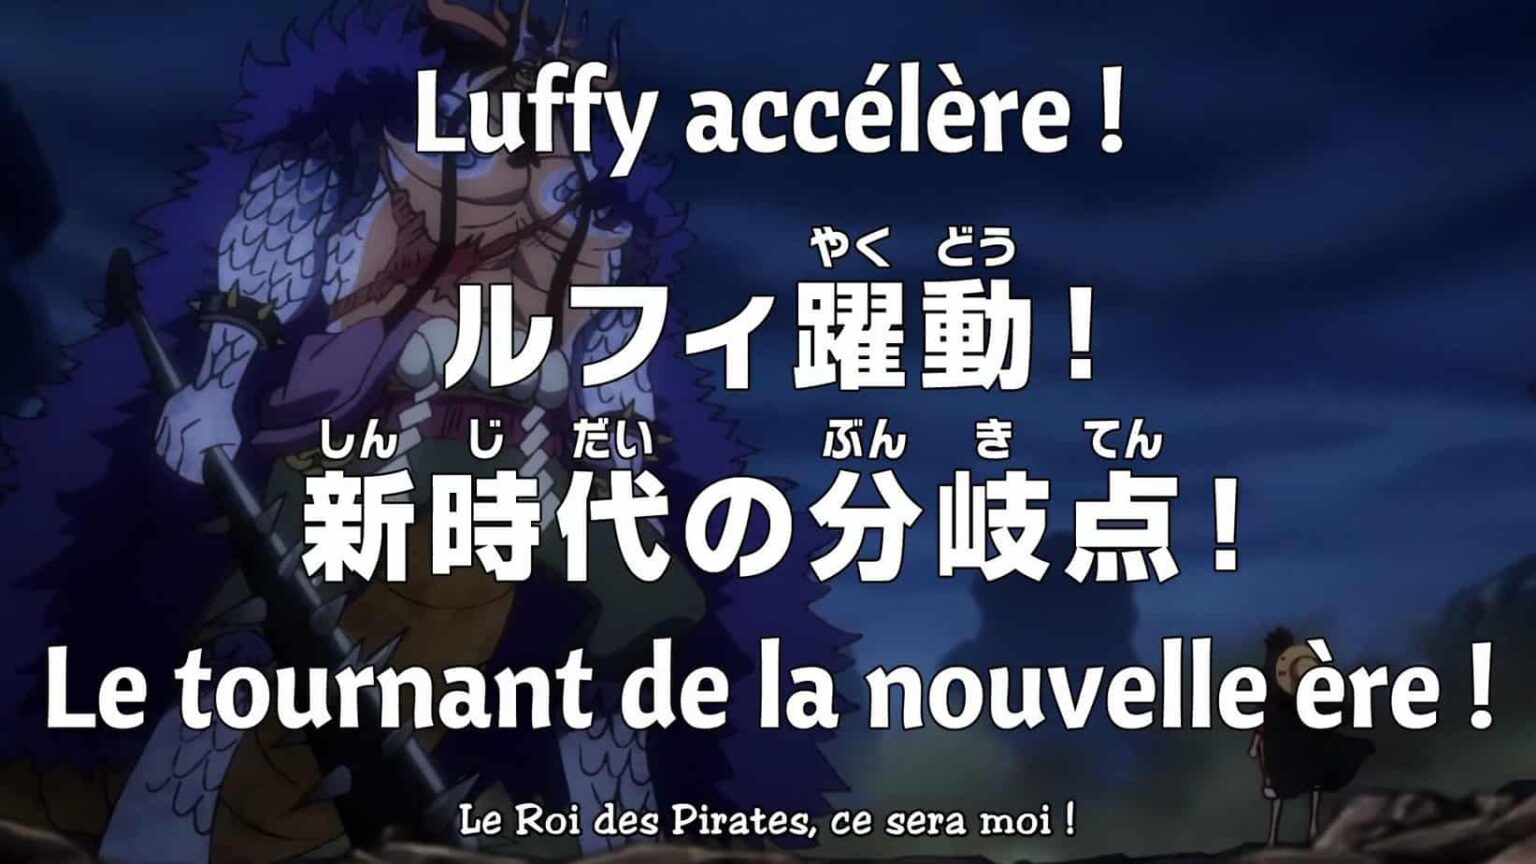 One piece Episode 1063 vostfr « Luffy accélère ! Le tournant de la nouvelle êre ! »